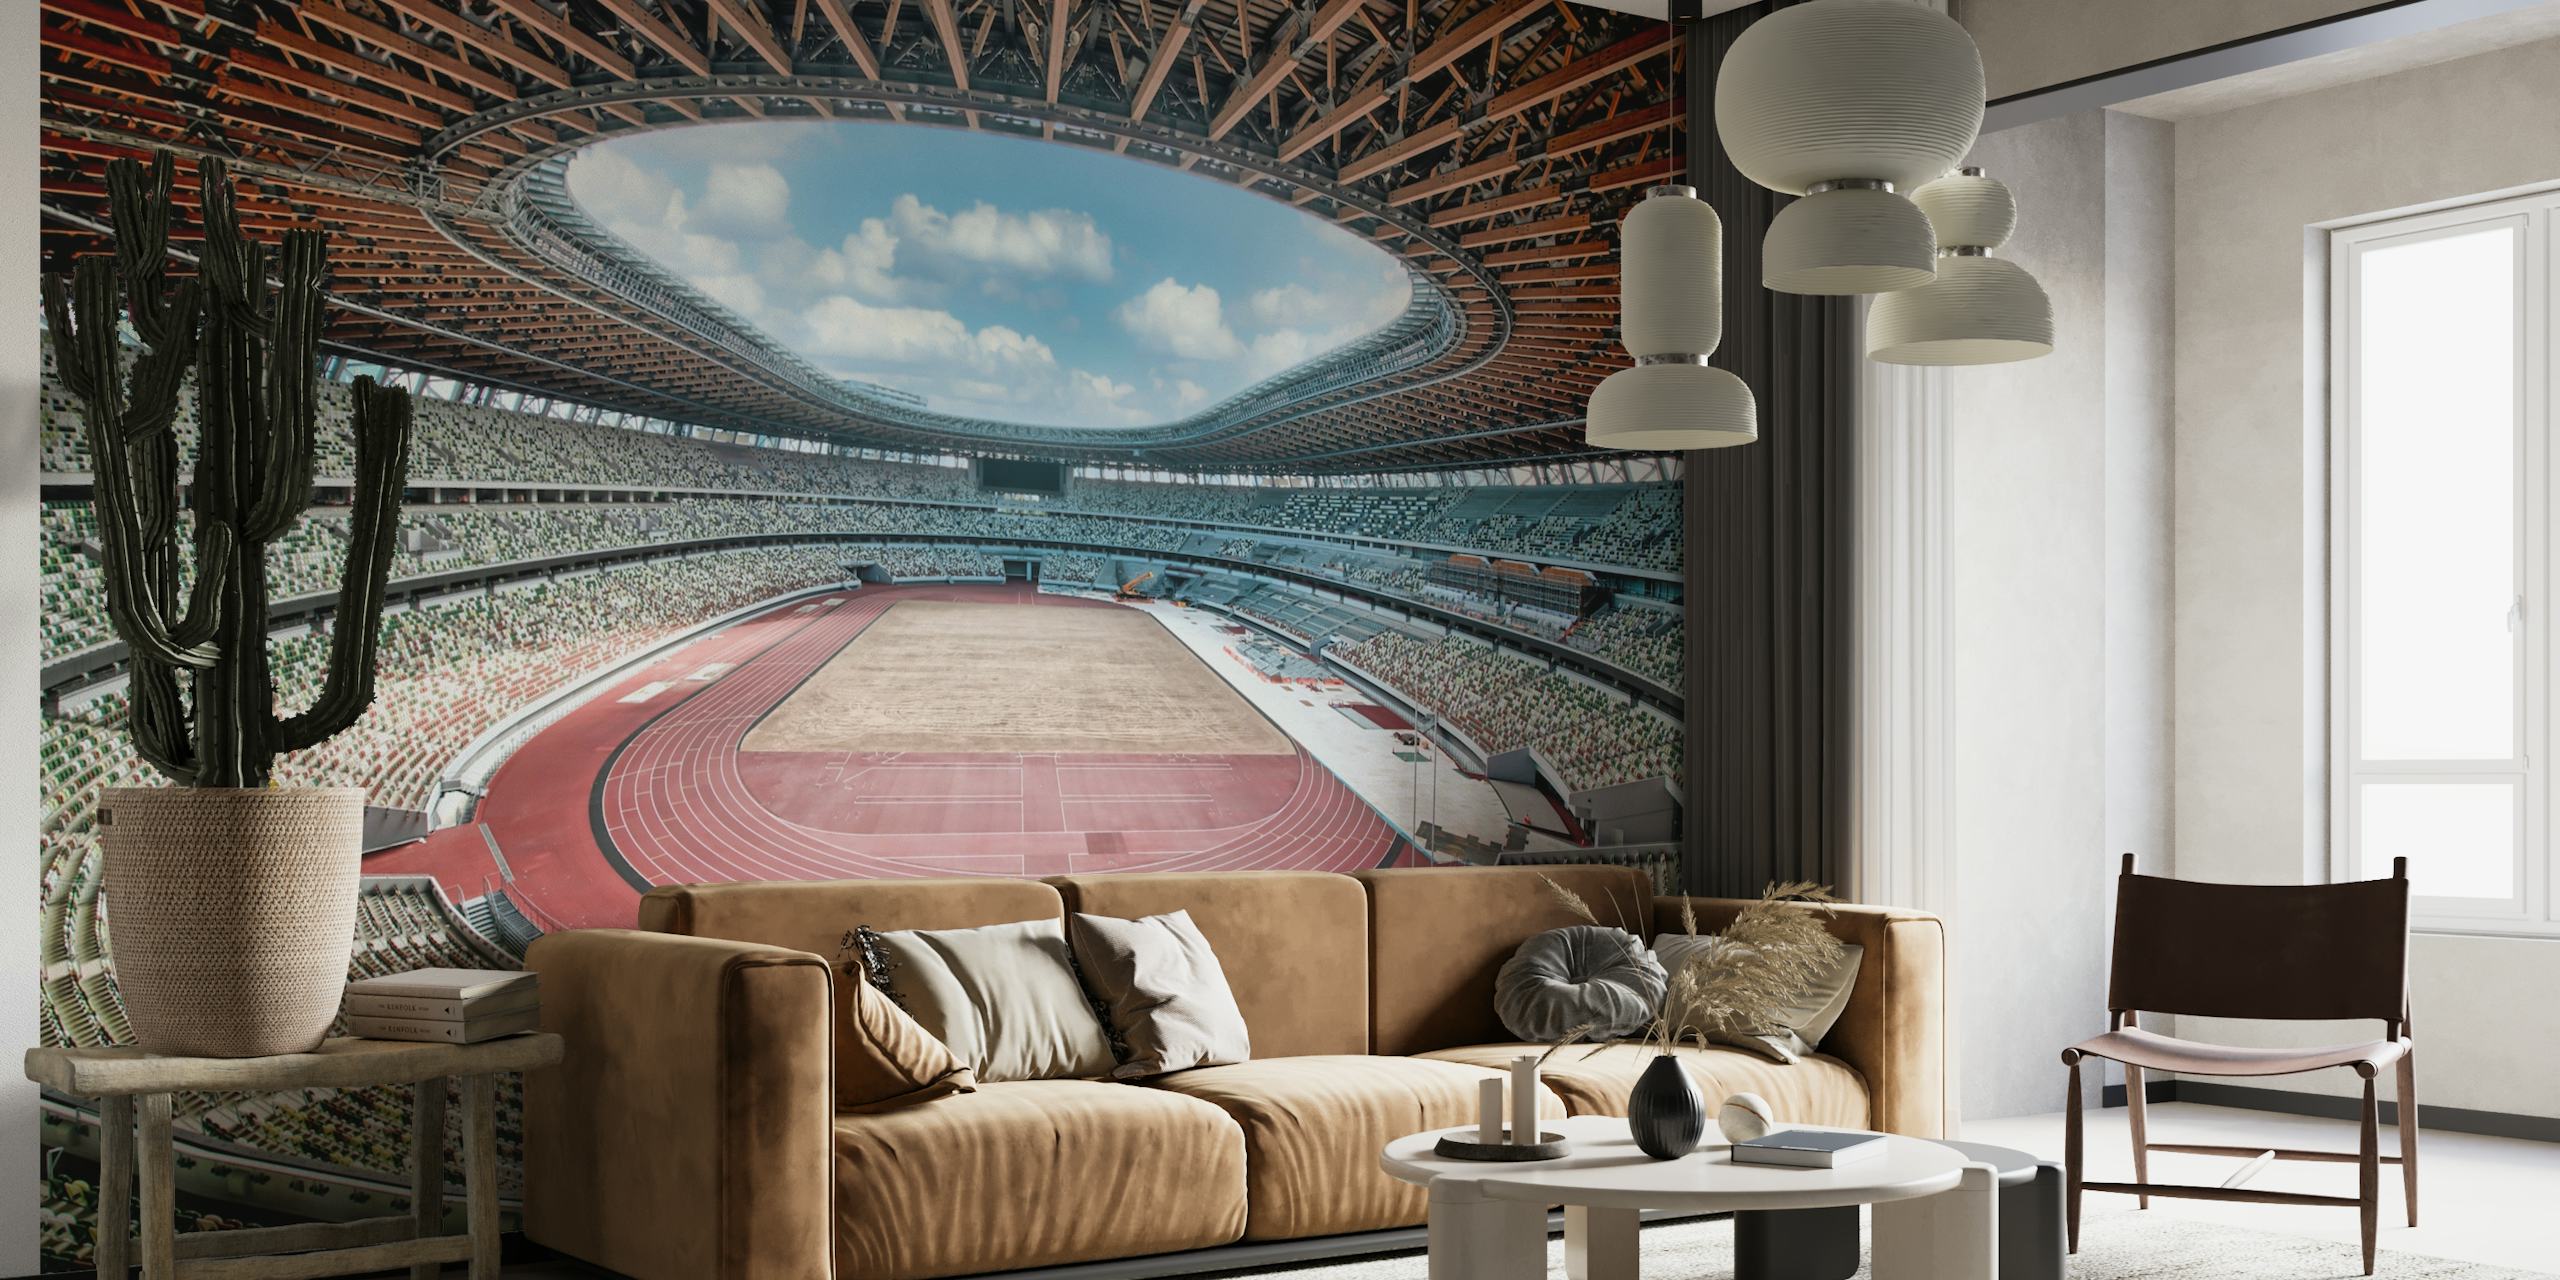 Tokyo 2020 Olympic Stadium papel pintado